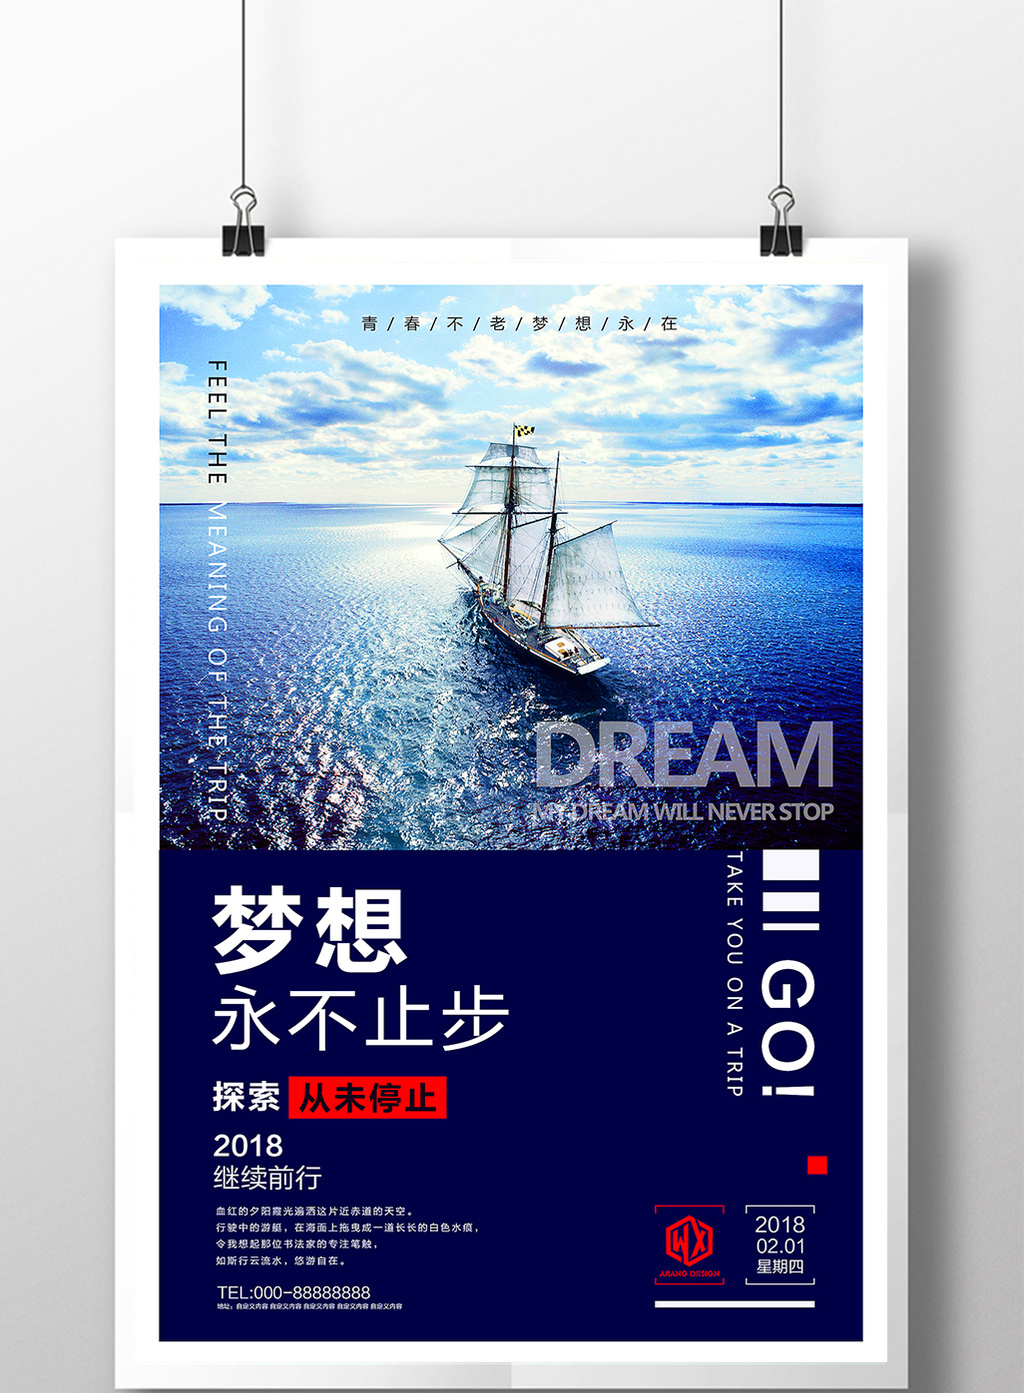 商务励志梦想起航企业文化微信配图创意海报模板下载